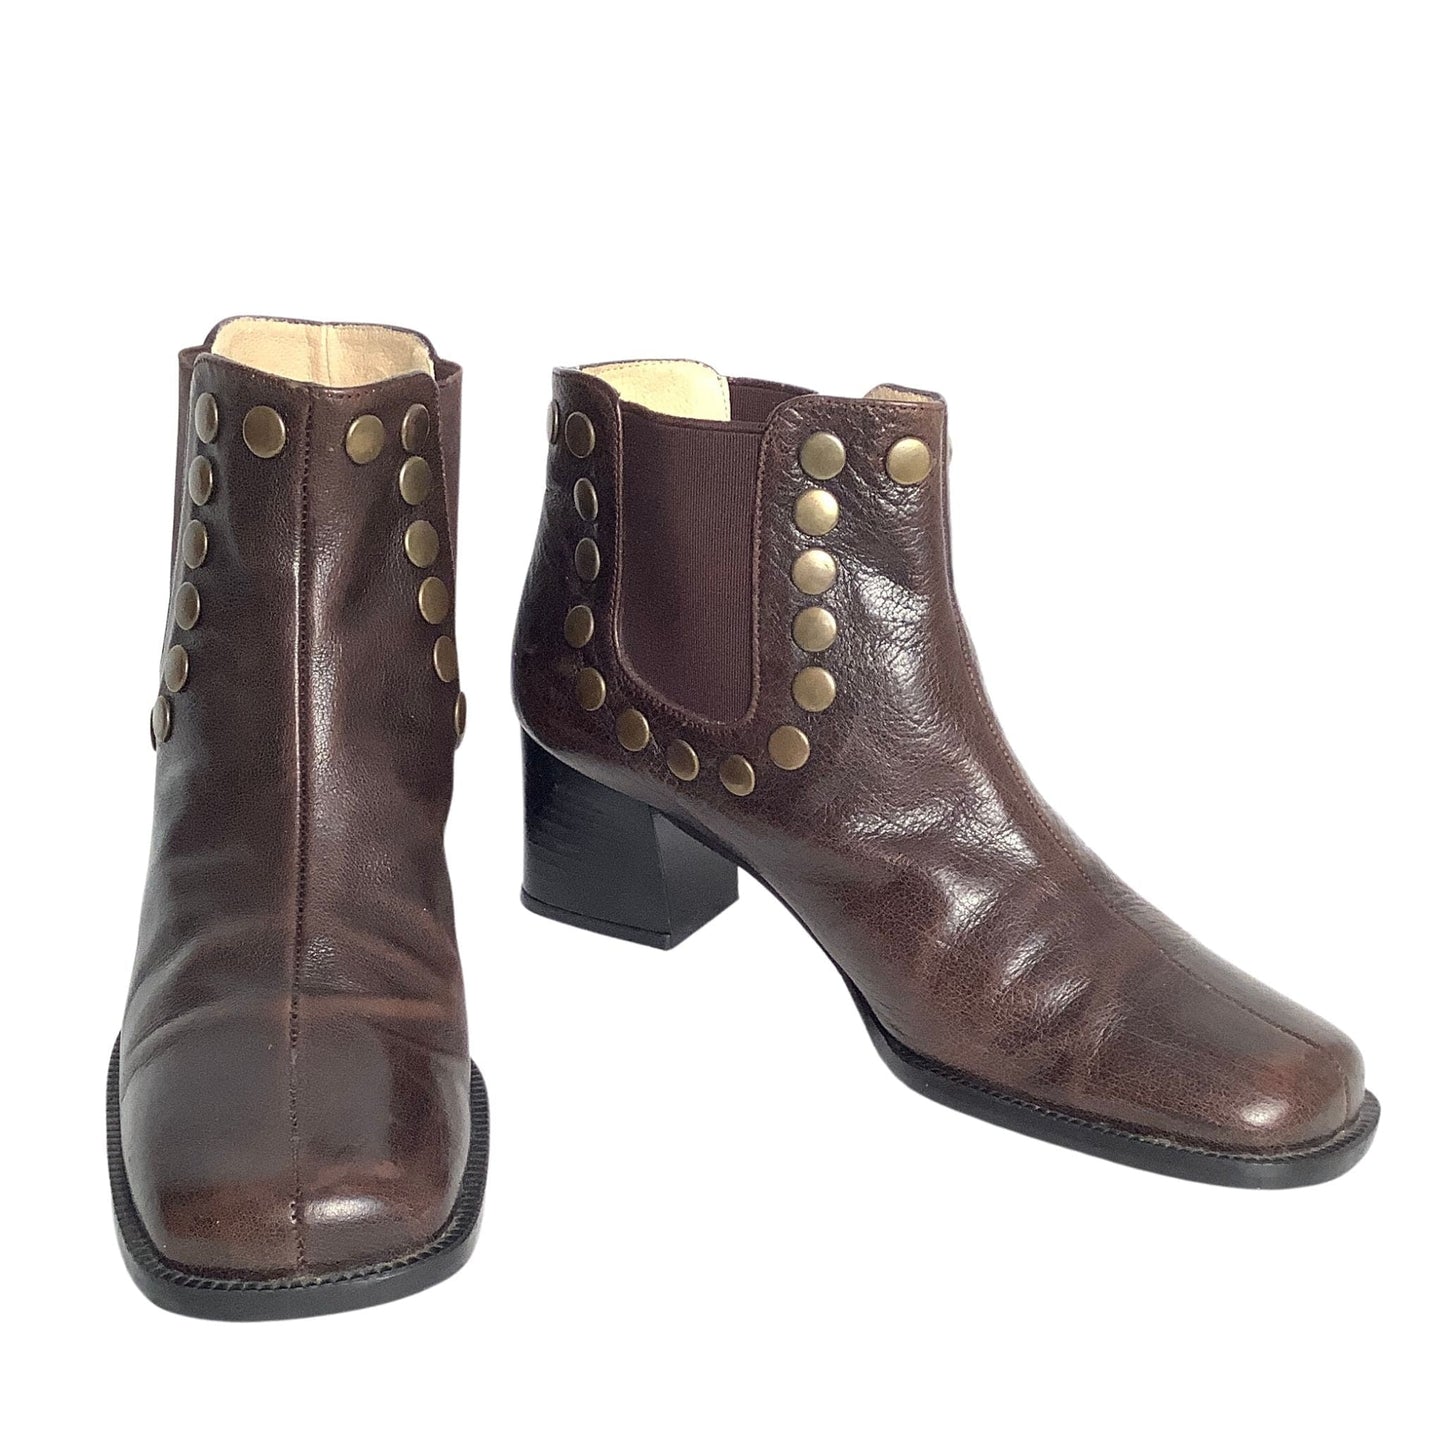 Vintage Studded Ankle Boots 7 / Brown / Vintage 1970s